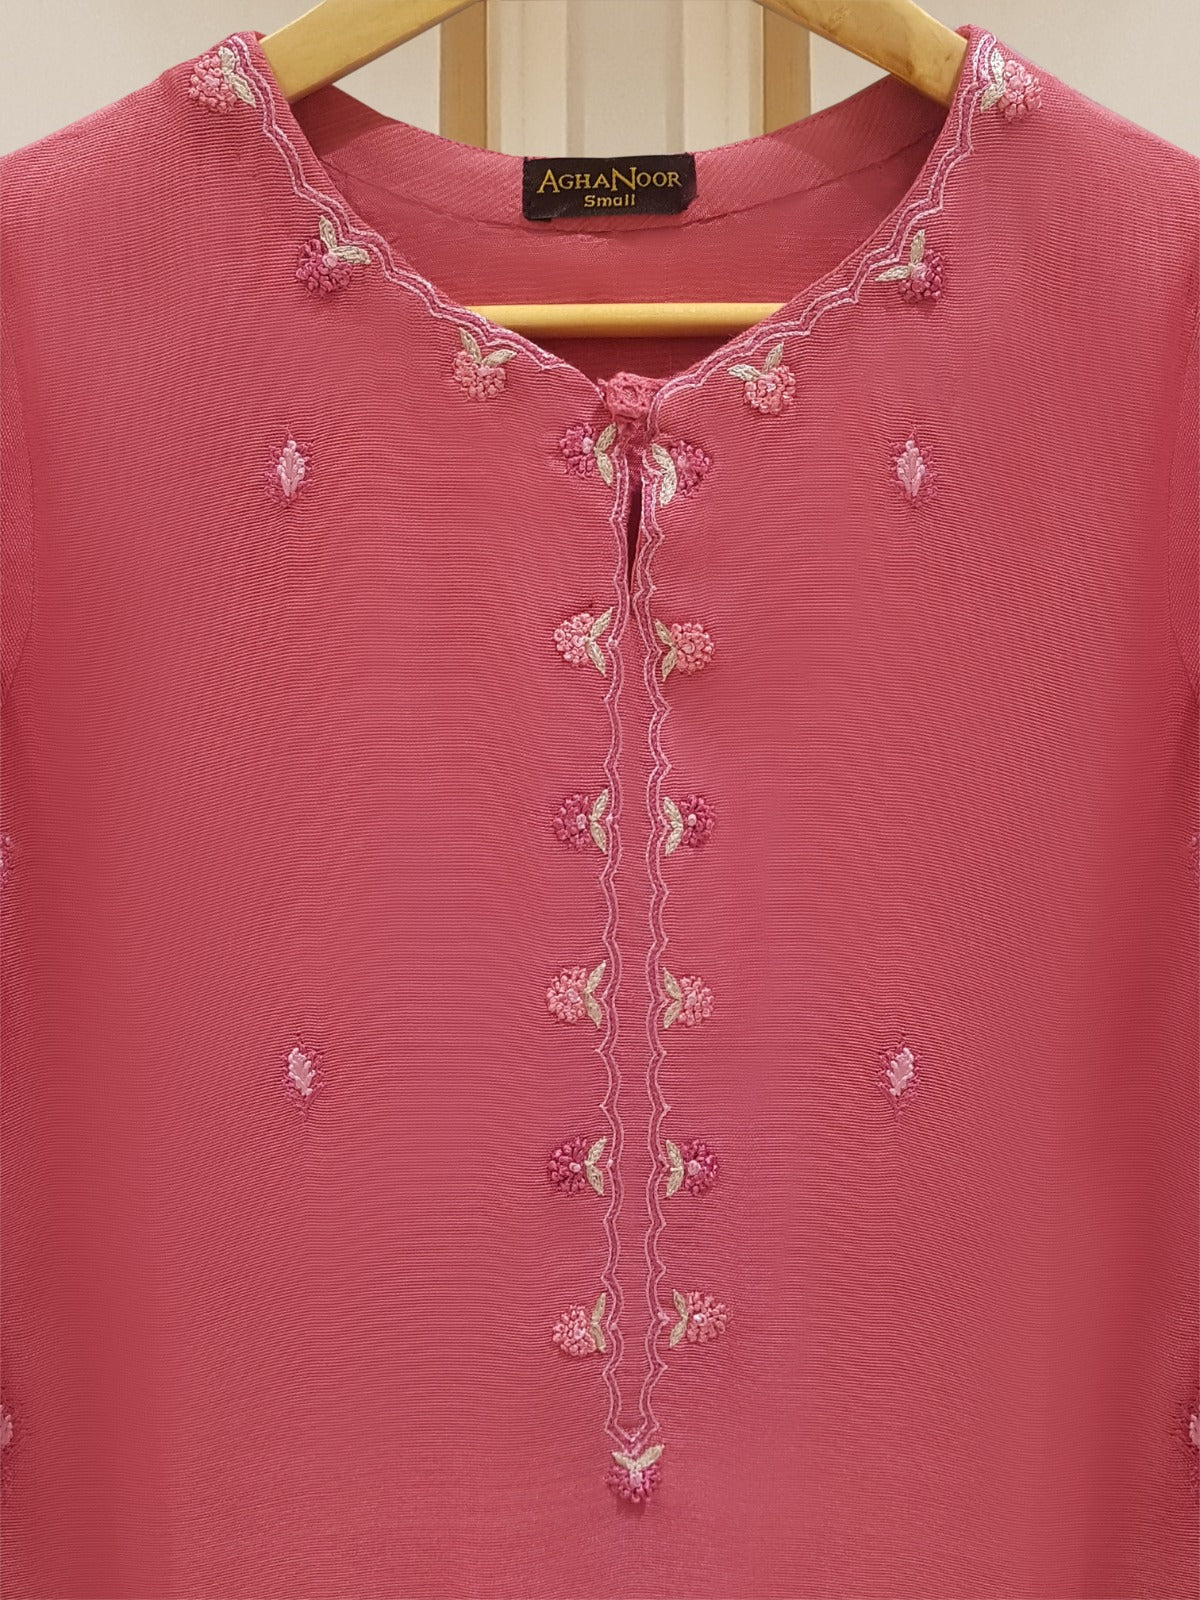 Agha Noor Pink Pure Cotton Net 2-Piece (Shirt + Trouser)